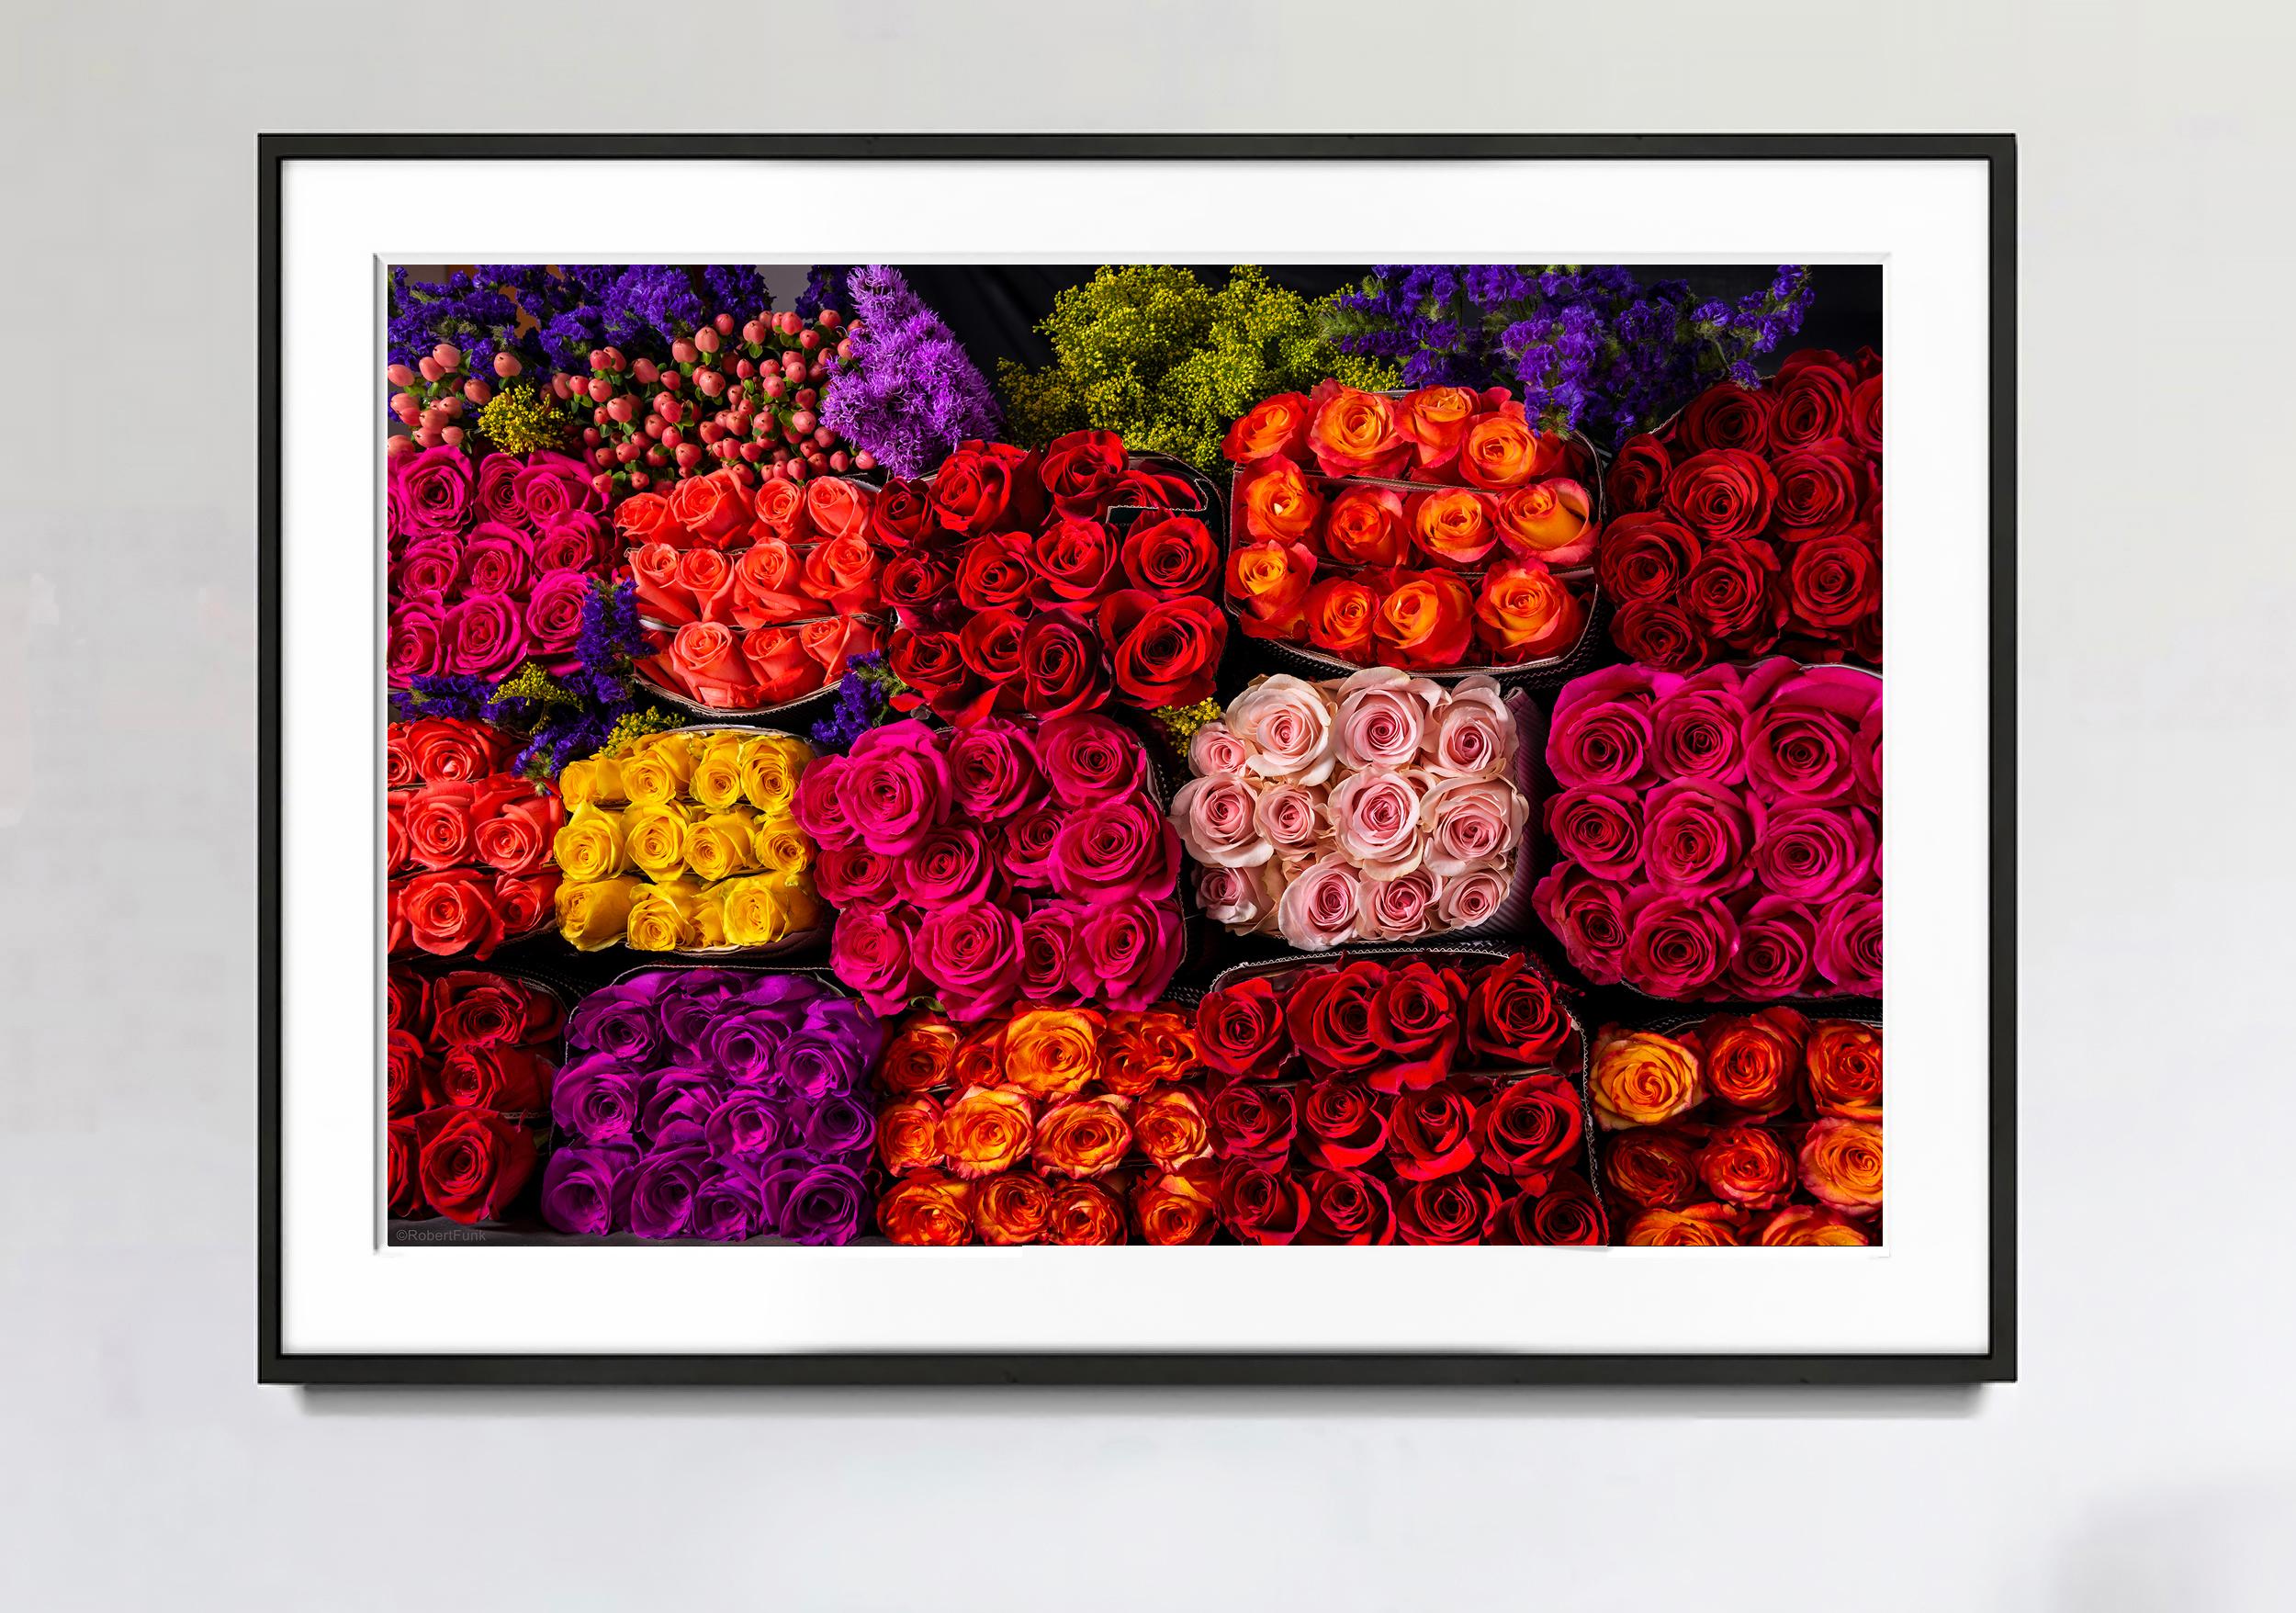 Color Photograph Robert Funk - Trois cents et soixante roses violettes et rouges  Le pouvoir des fleurs 